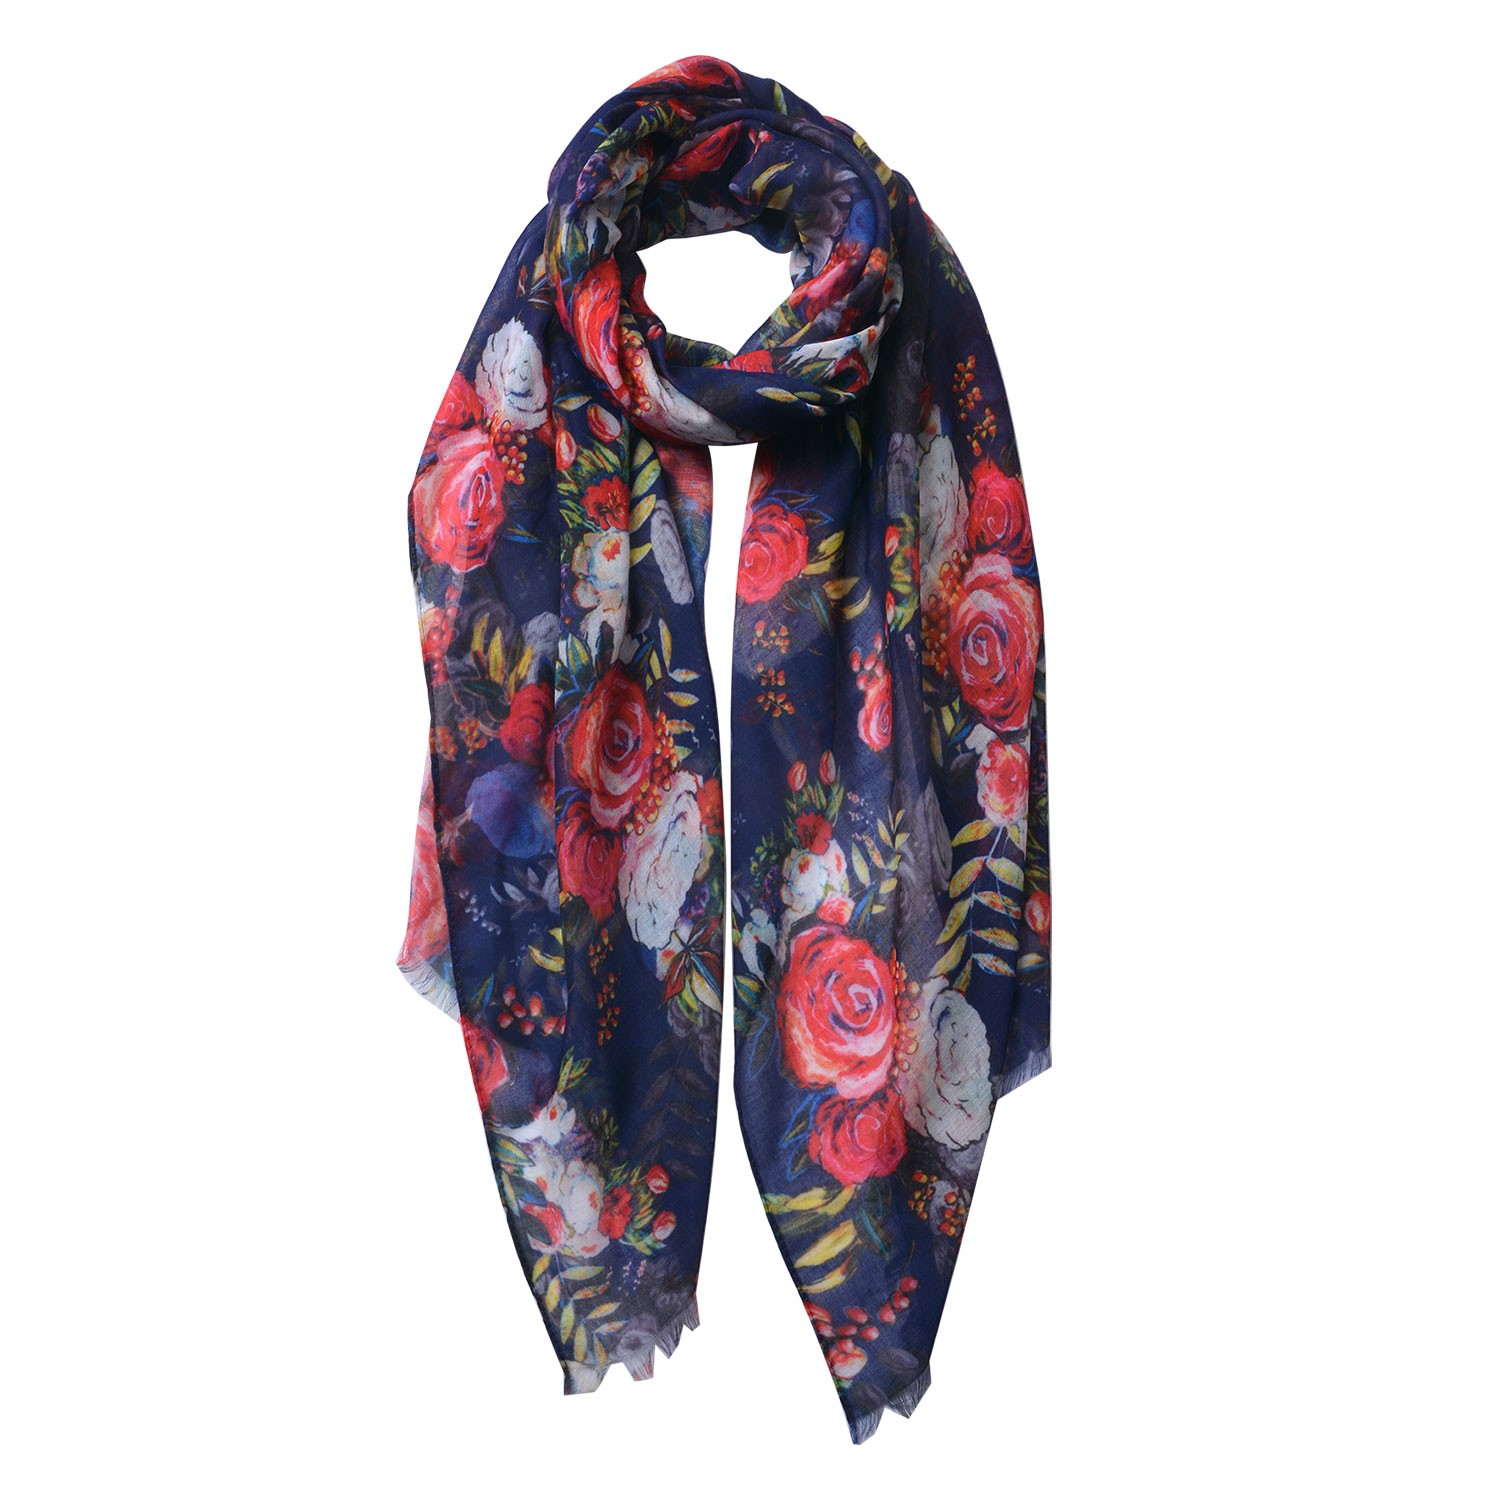 Modrý šátek s barevnými květy - 70*180 cm Clayre & Eef